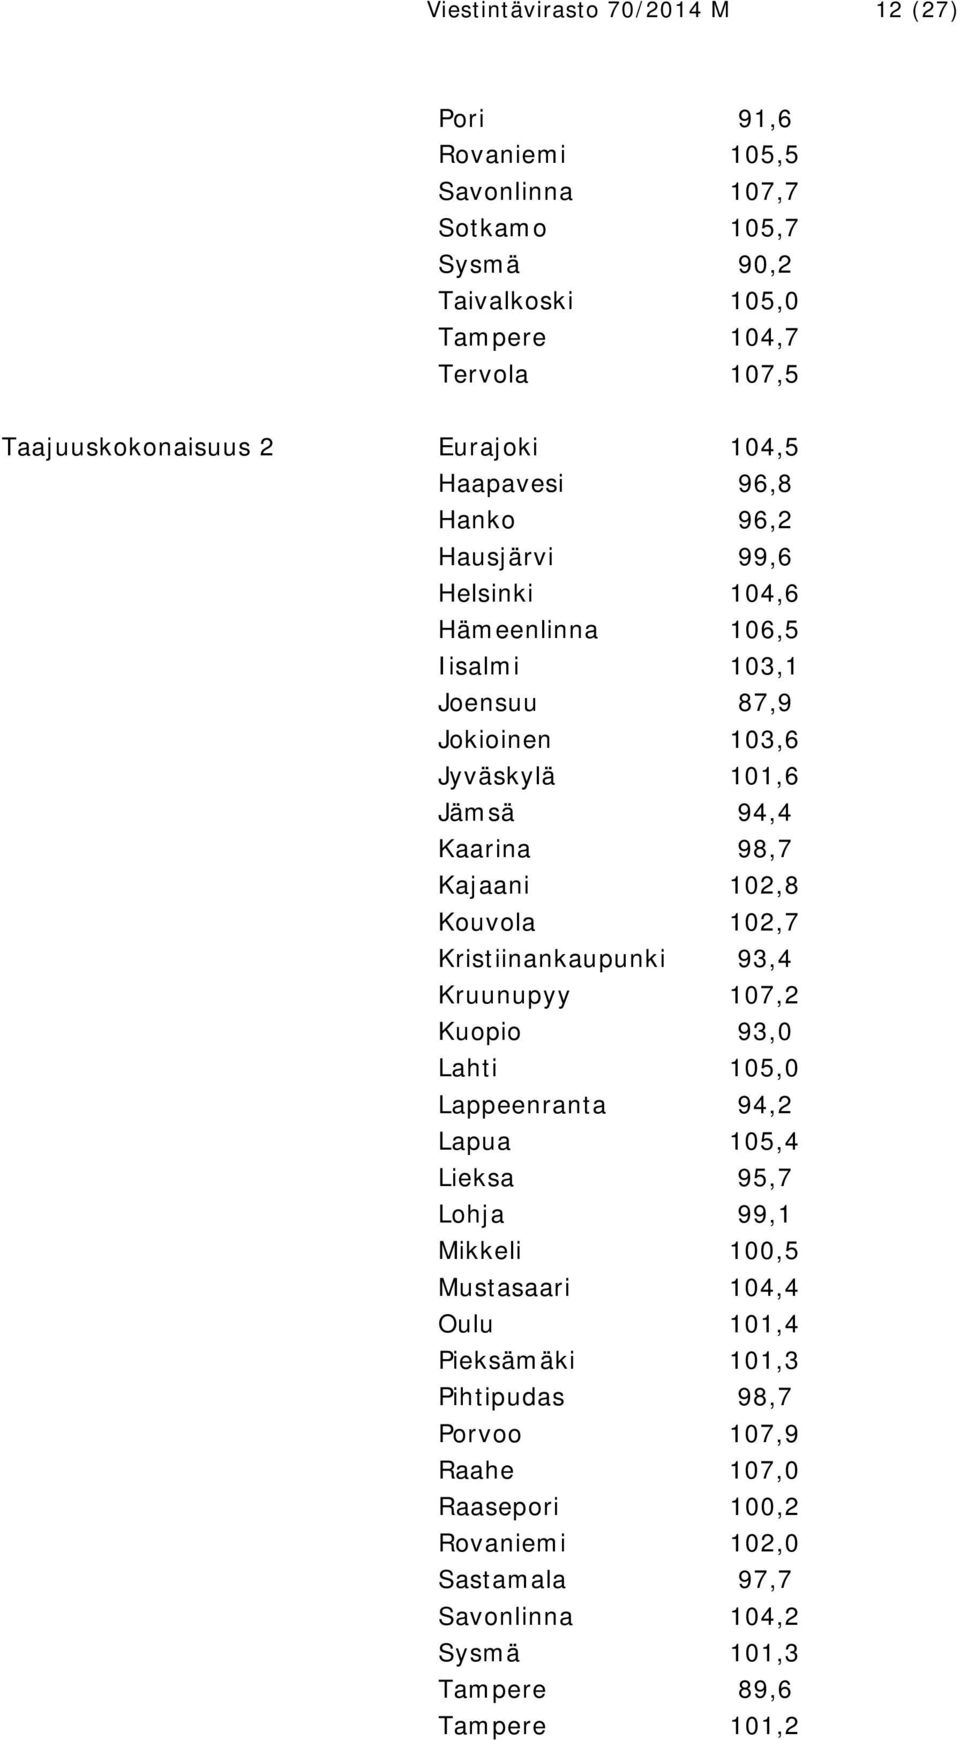 Kajaani 102,8 Kouvola 102,7 Kristiinankaupunki 93,4 Kruunupyy 107,2 Kuopio 93,0 Lahti 105,0 Lappeenranta 94,2 Lapua 105,4 Lieksa 95,7 Lohja 99,1 Mikkeli 100,5 Mustasaari